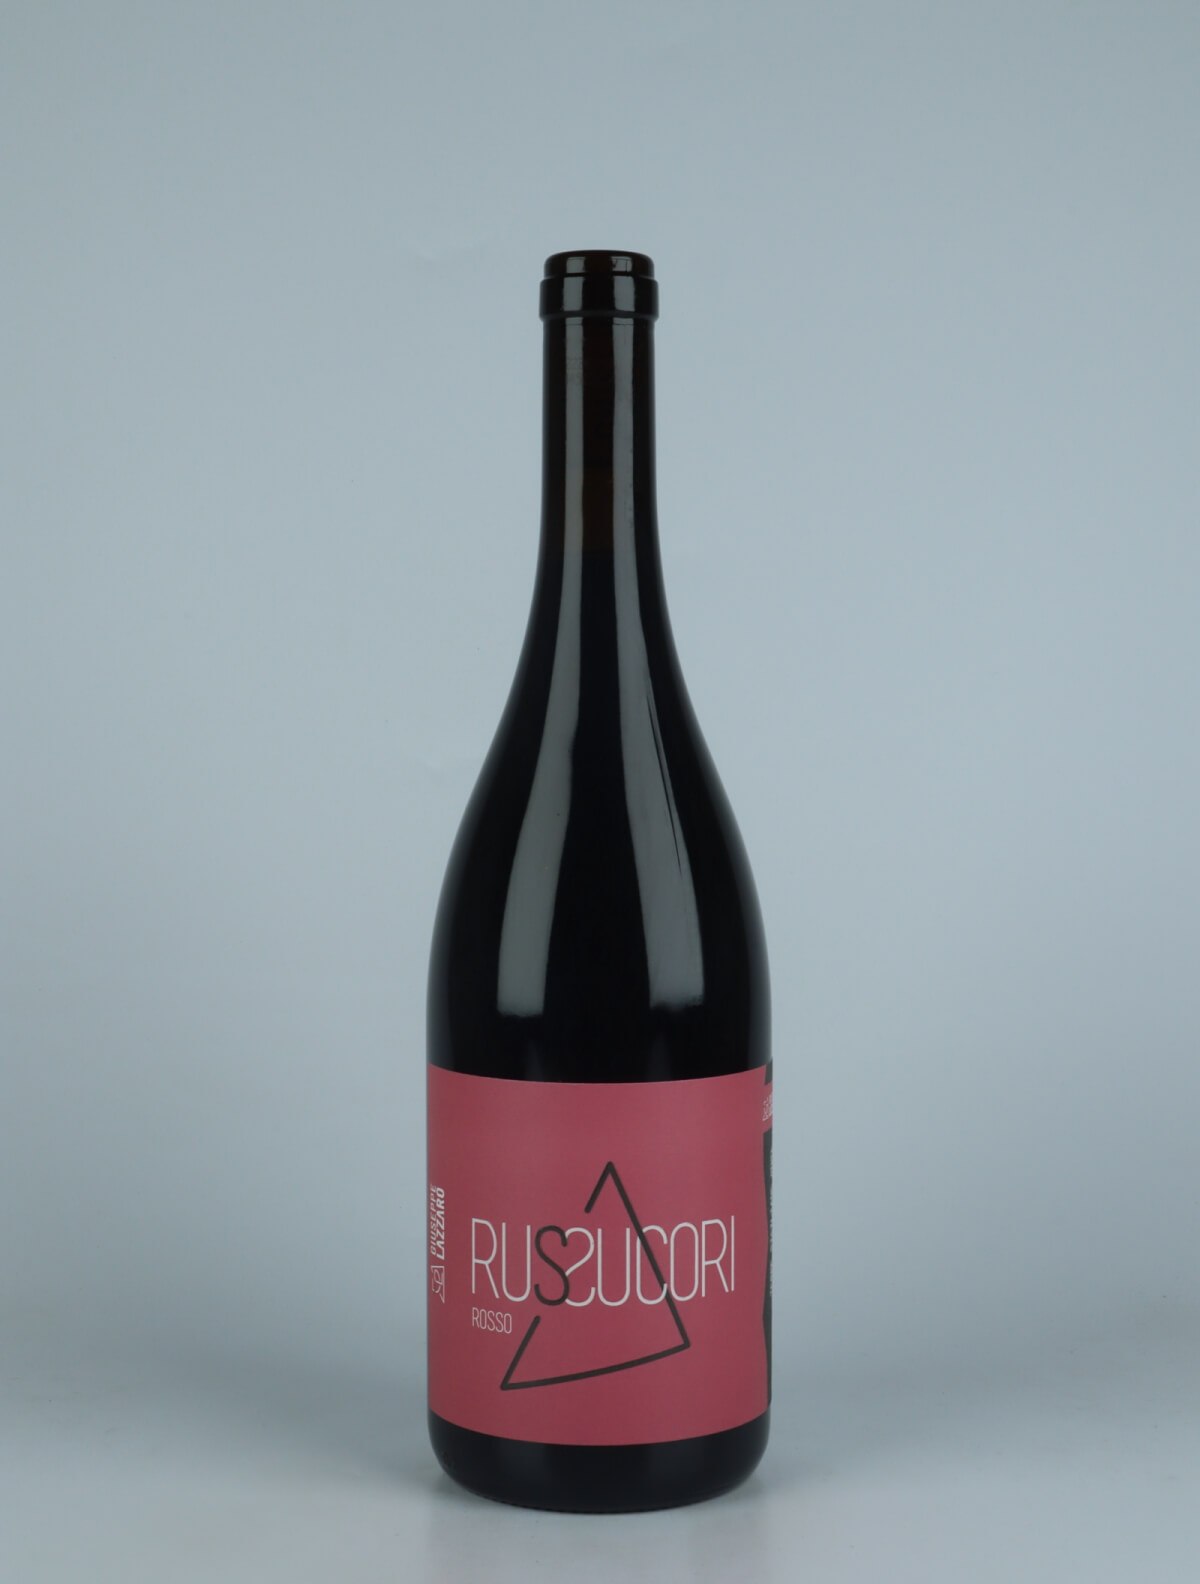 En flaske 2021 Russucori Rødvin fra Giuseppe Lazzaro, Sicilien i Italien